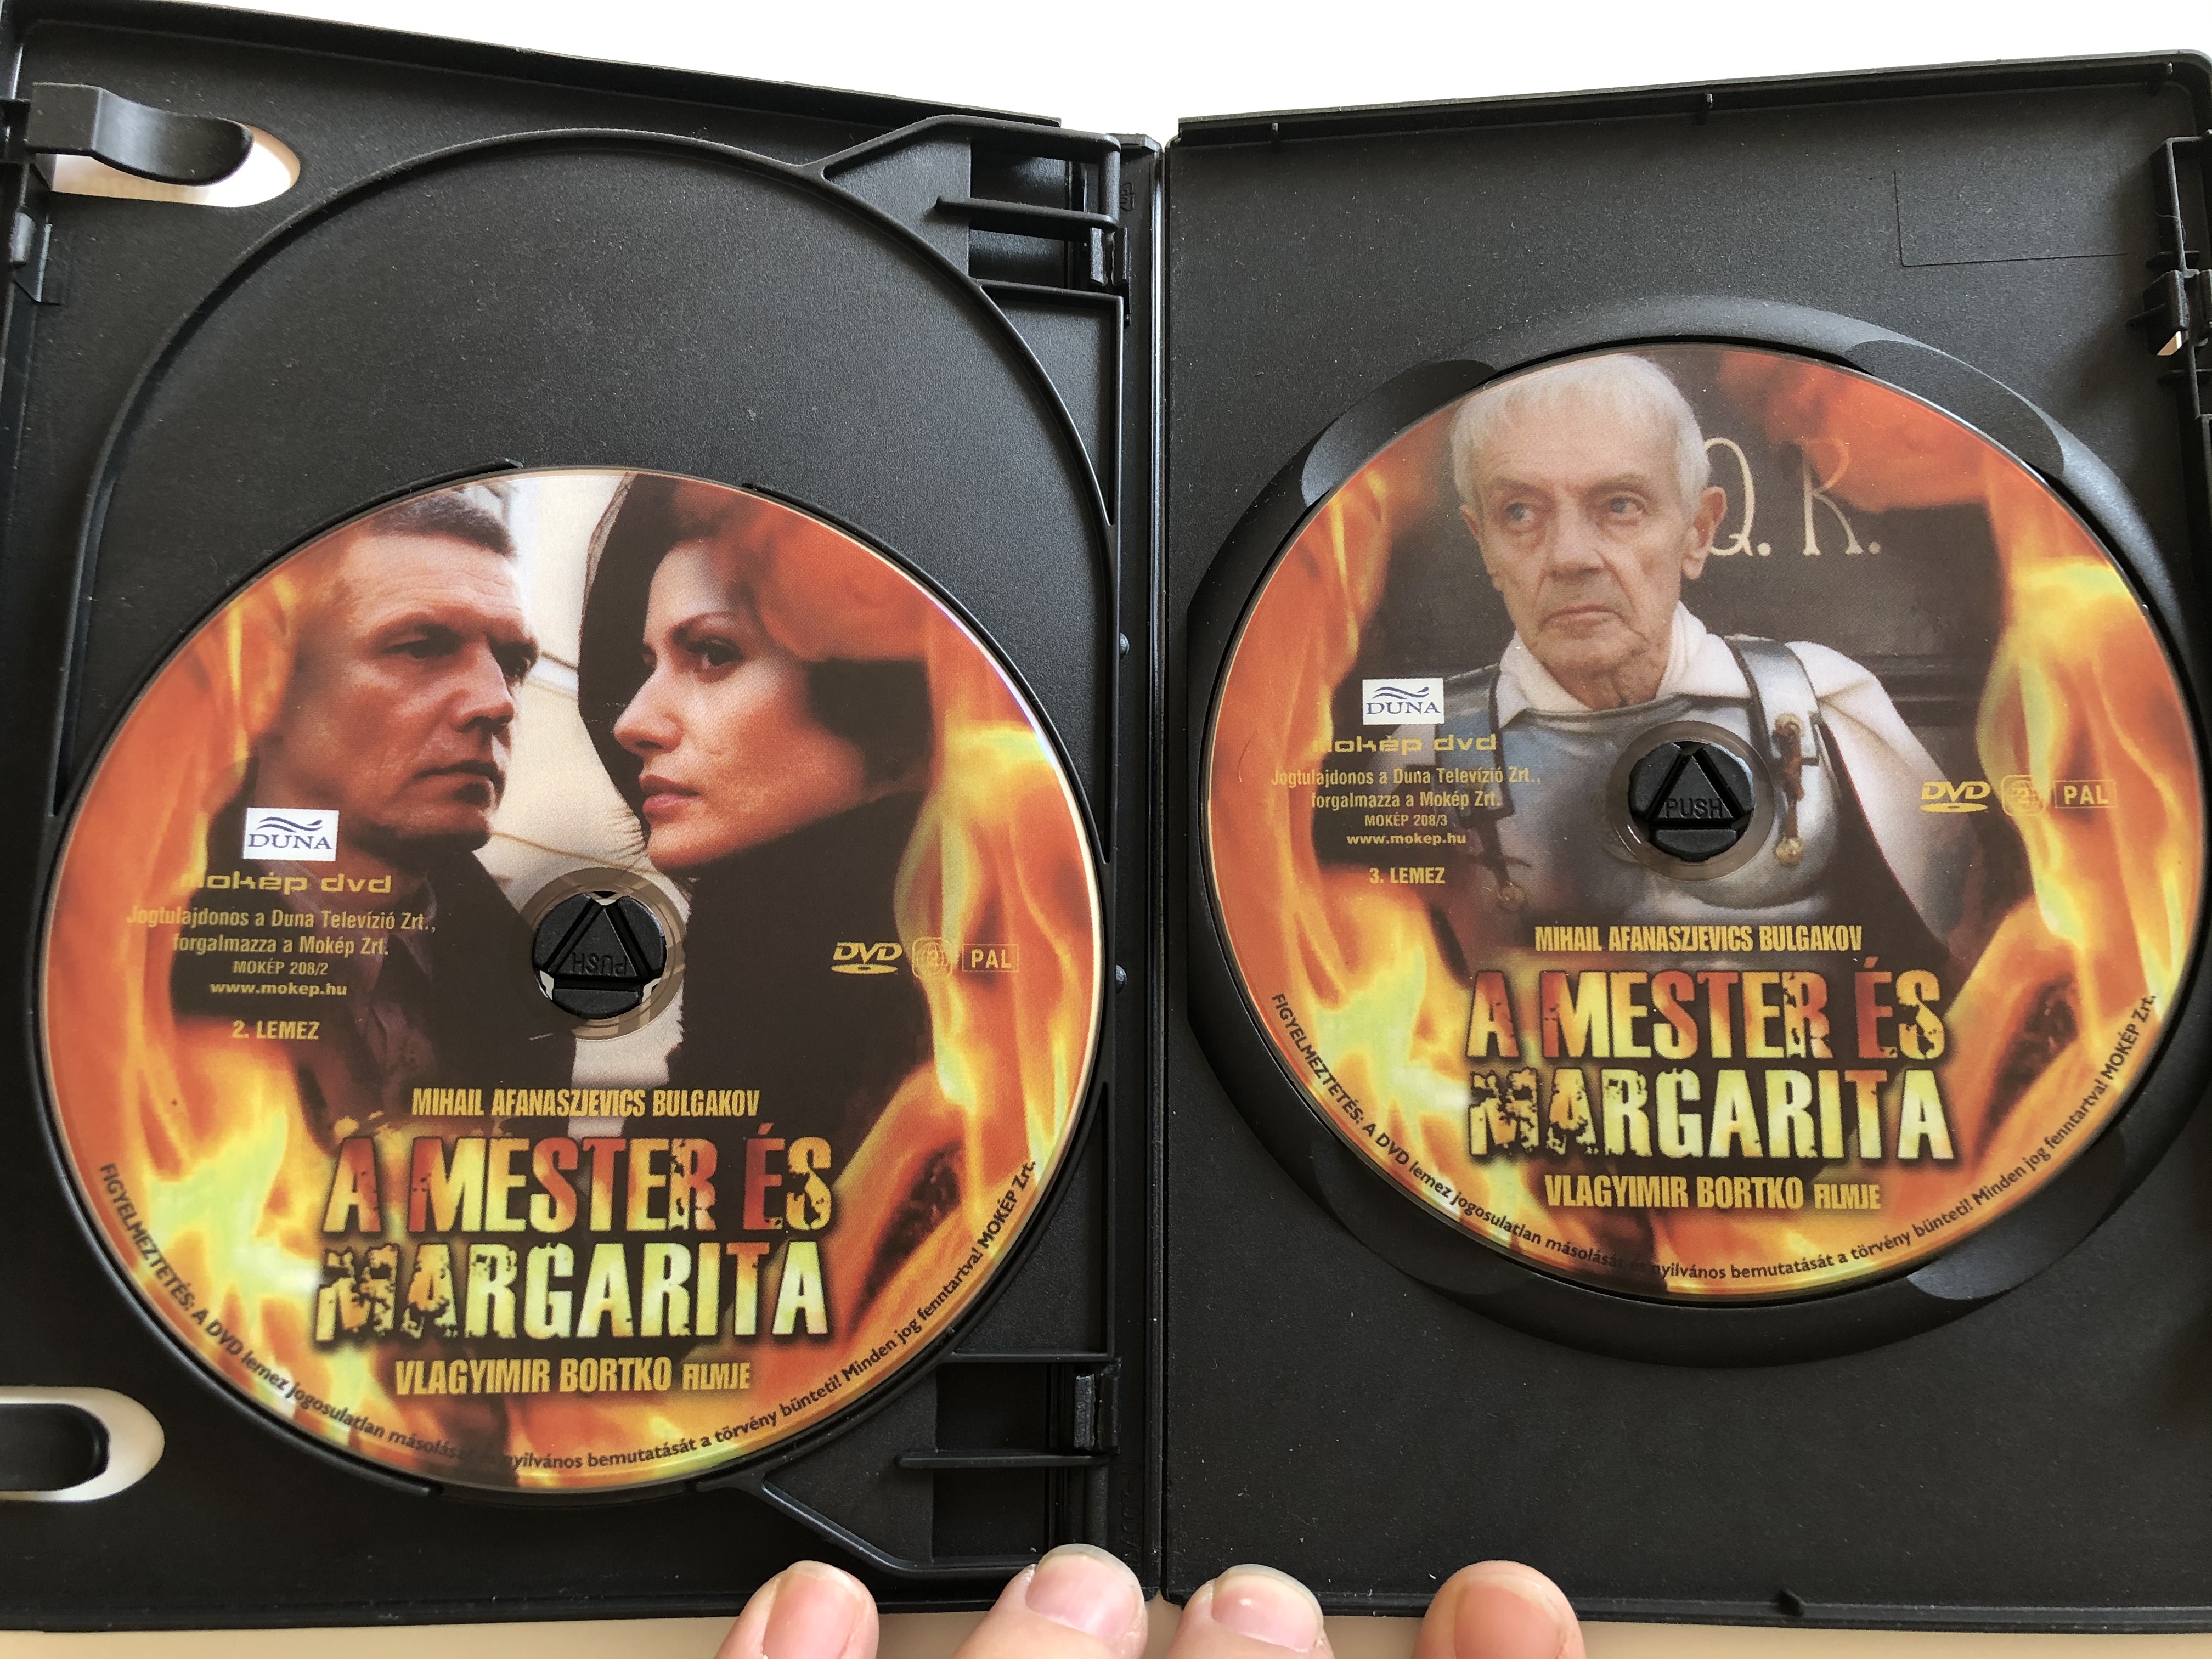 Master i Margarita DVD 2005 A Mester és Margarita - 3 DVD 1.JPG